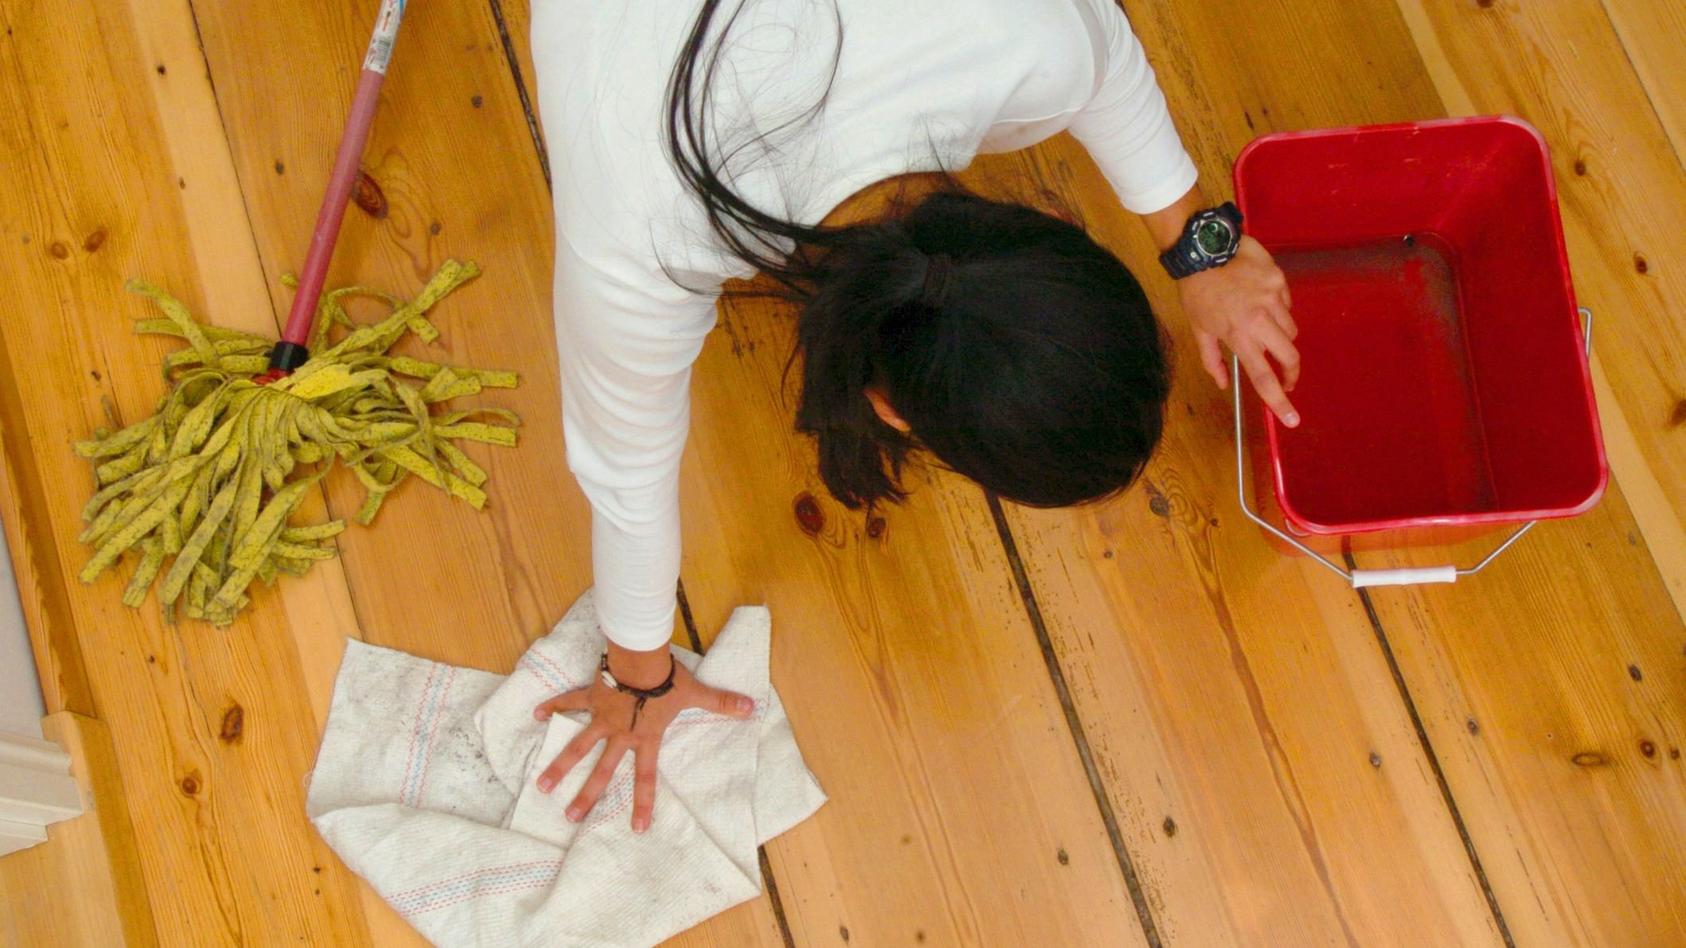 ARCHIV - 14.01.2004, Brandenburg, Potsdam: Eine Frau putzt den Fußboden. Haushaltshilfen haben ein Imageproblemen: Trotz eines steigenden Bedarfs an Unterstützung in den eigenen vier Wänden klagt die Branche über mangelnde Wertschätzung für Arbeiten 